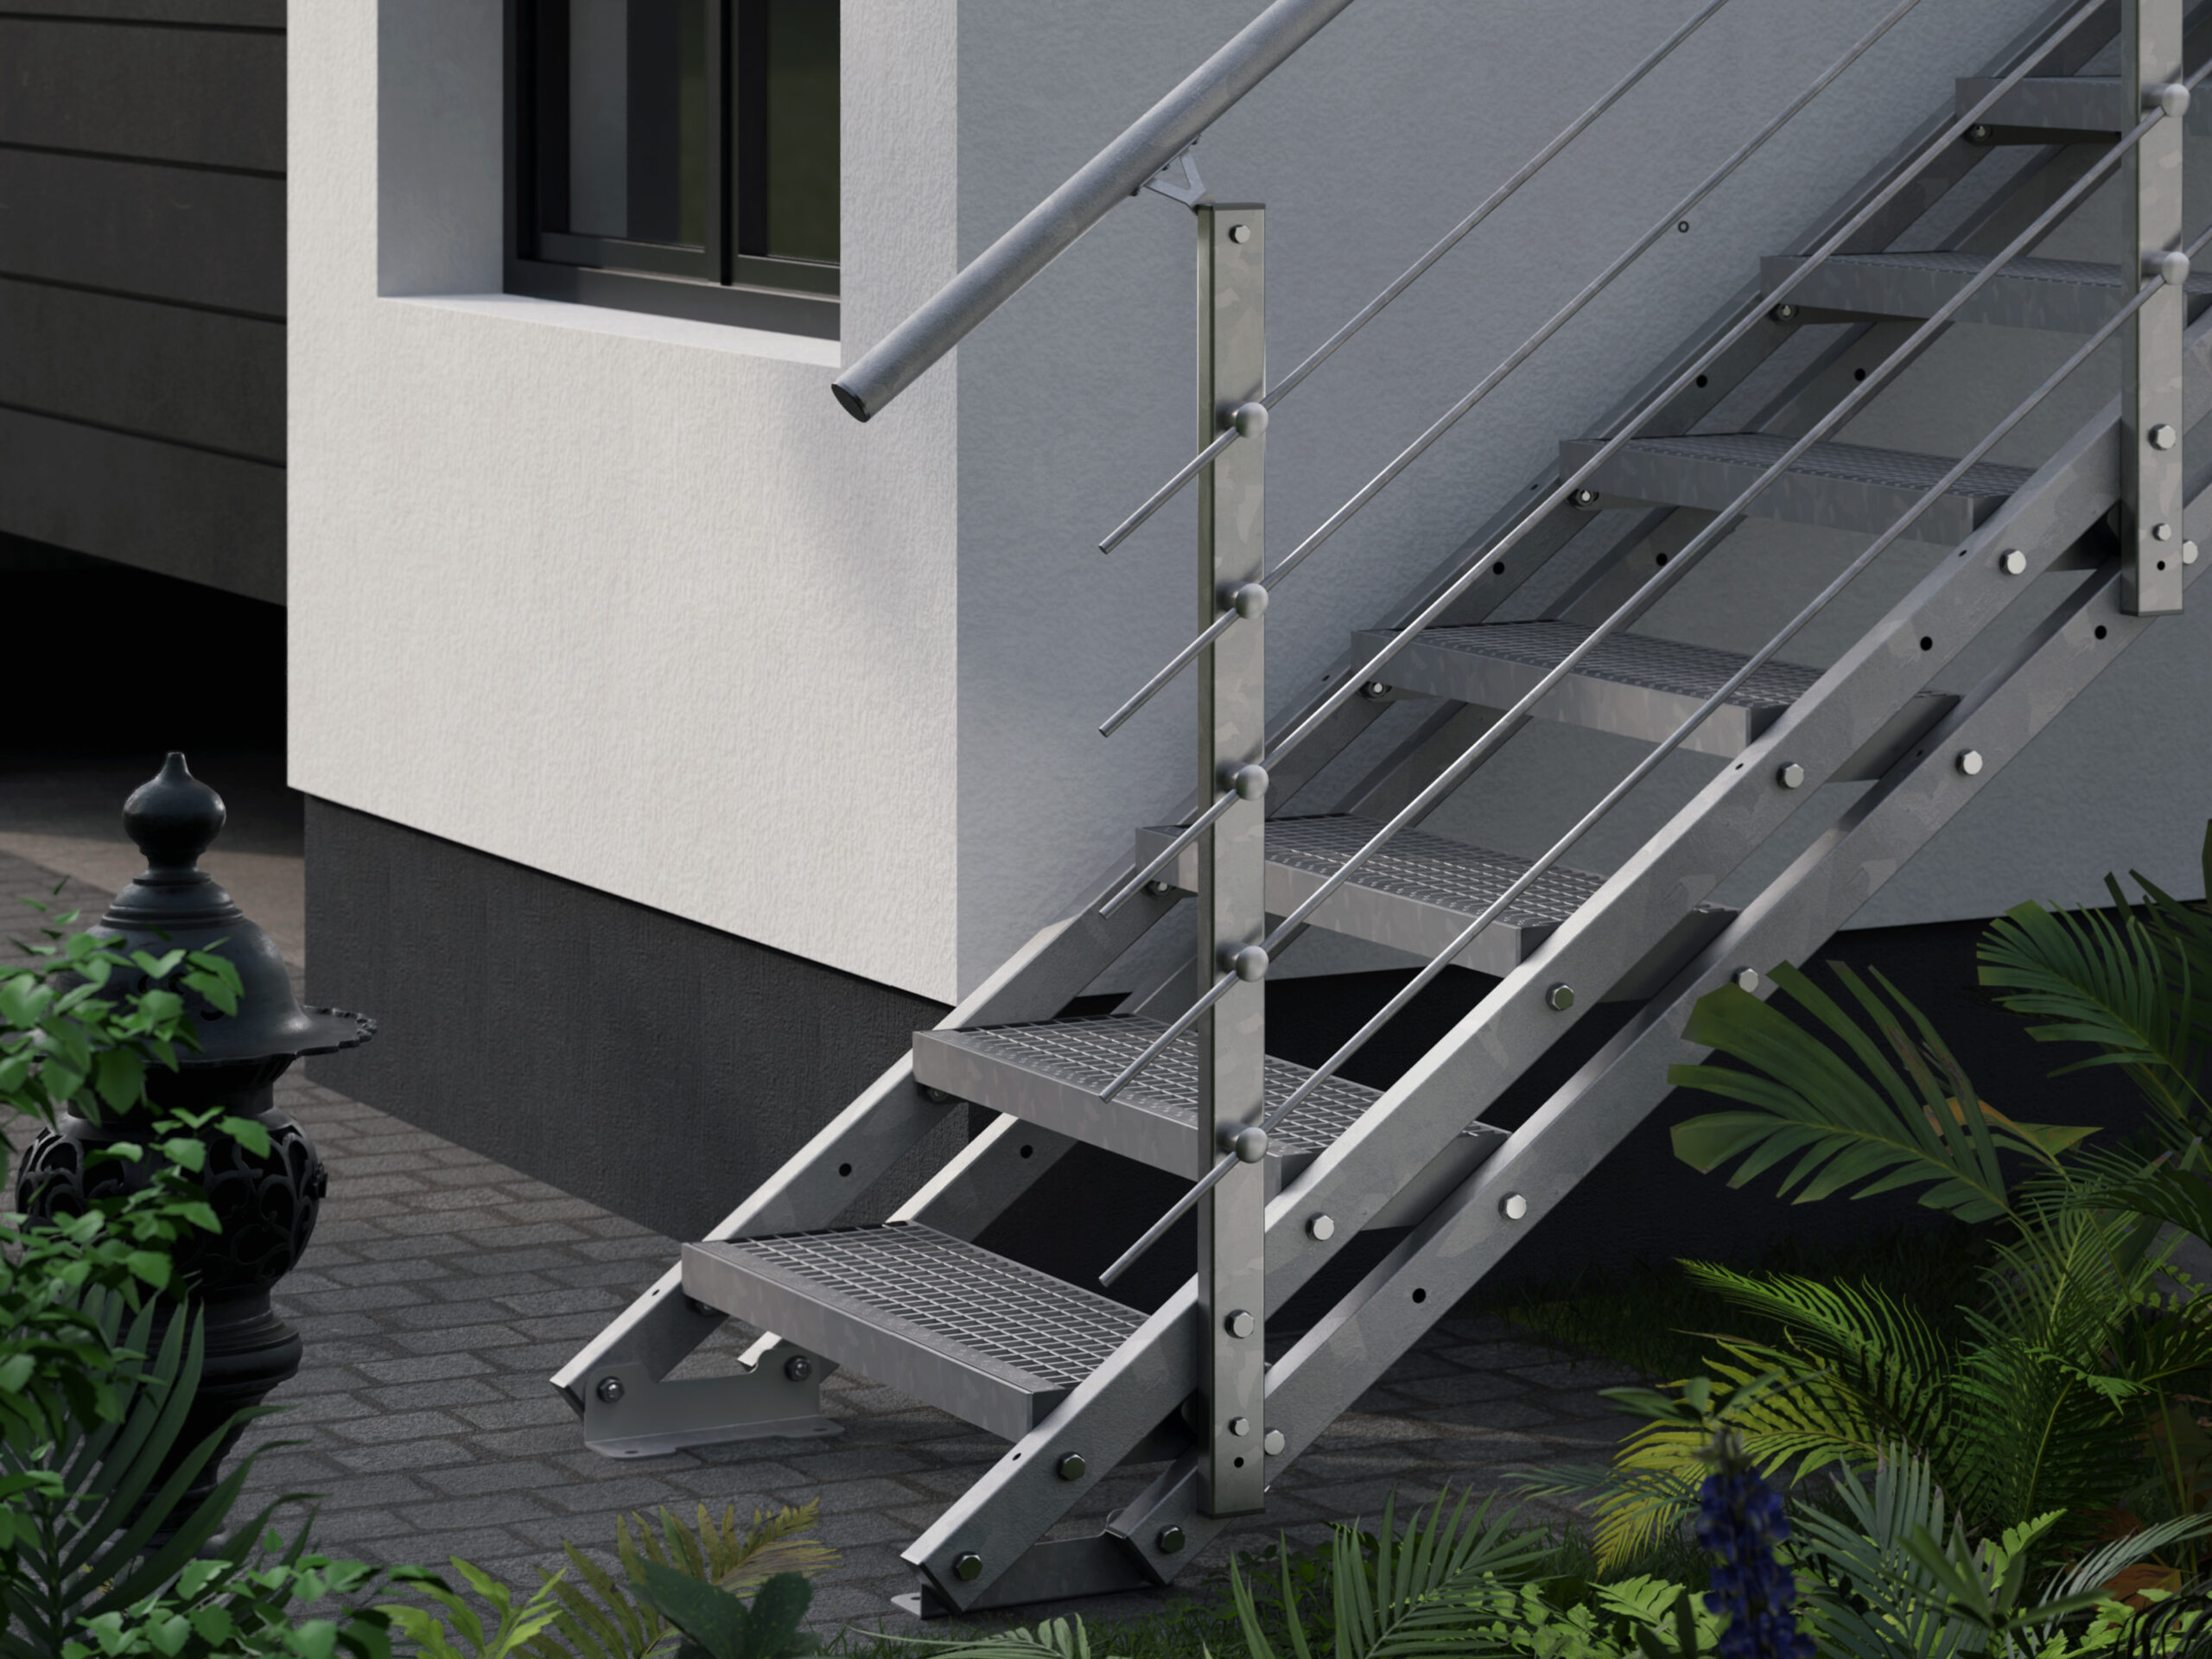 Anstellhöhe variabel von 29 cm bis 44 cm feuerverzinkte Stahltreppe mit 1000 mm Stufenlänge als montagefertiger Bausatz Außentreppe 2 Stufen 100 cm Laufbreite einseitiges Geländer rechts Gitterroststufe ST3